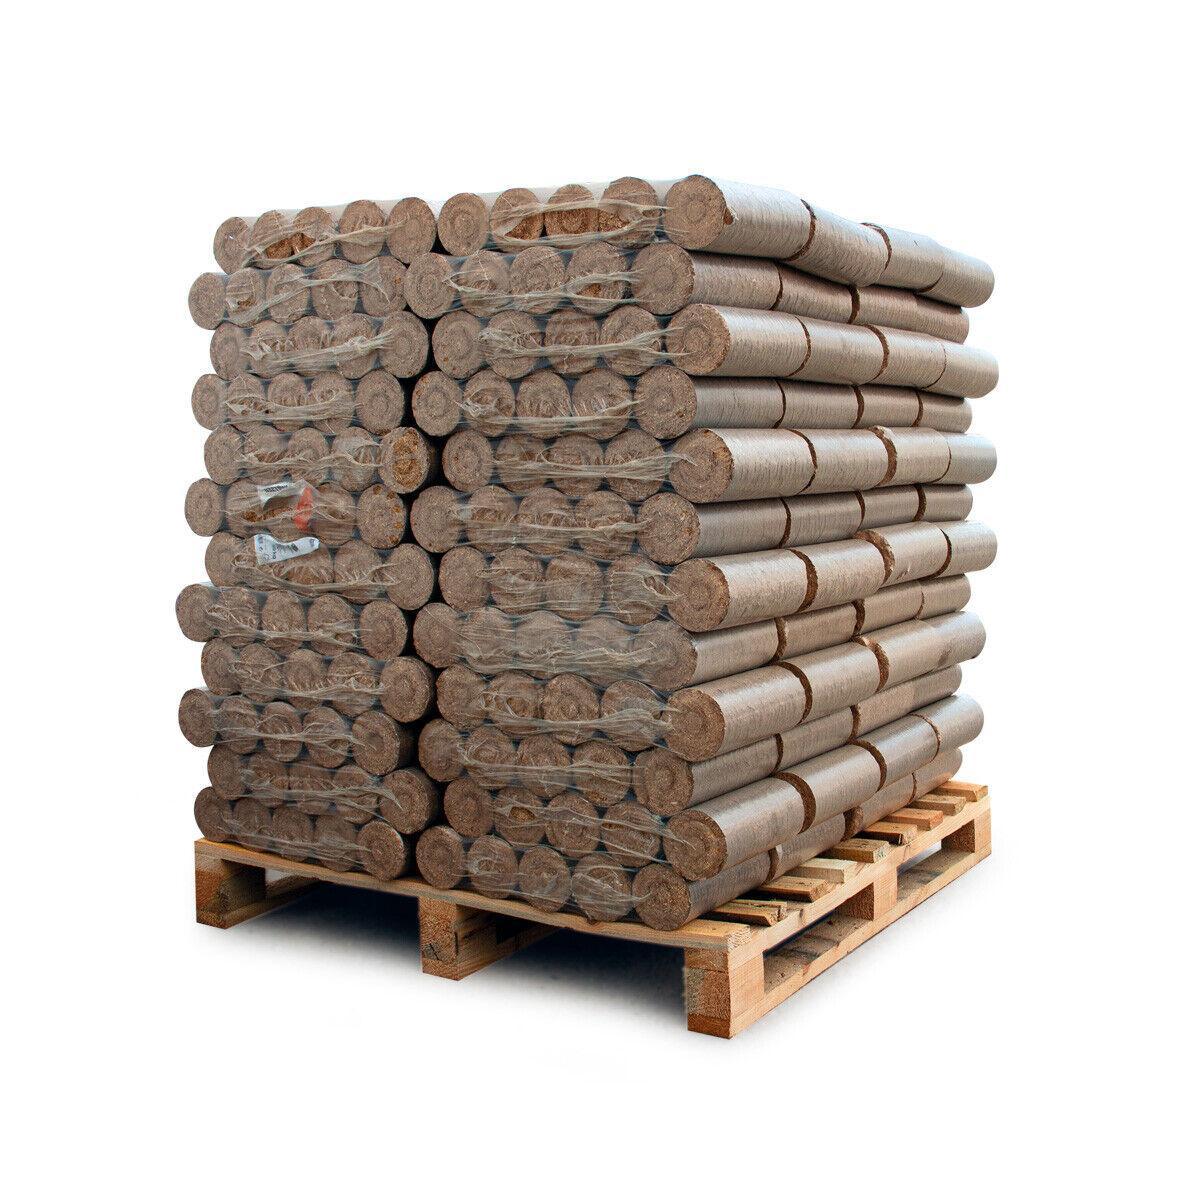 Paligo Heizfuxx Holzbriketts Hartholz Nielsen XL 10kg x 96 960kg Palette - Brennholz-Scheiffele.de - Ihre Anlaufstelle für hochwertiges Brennholz!